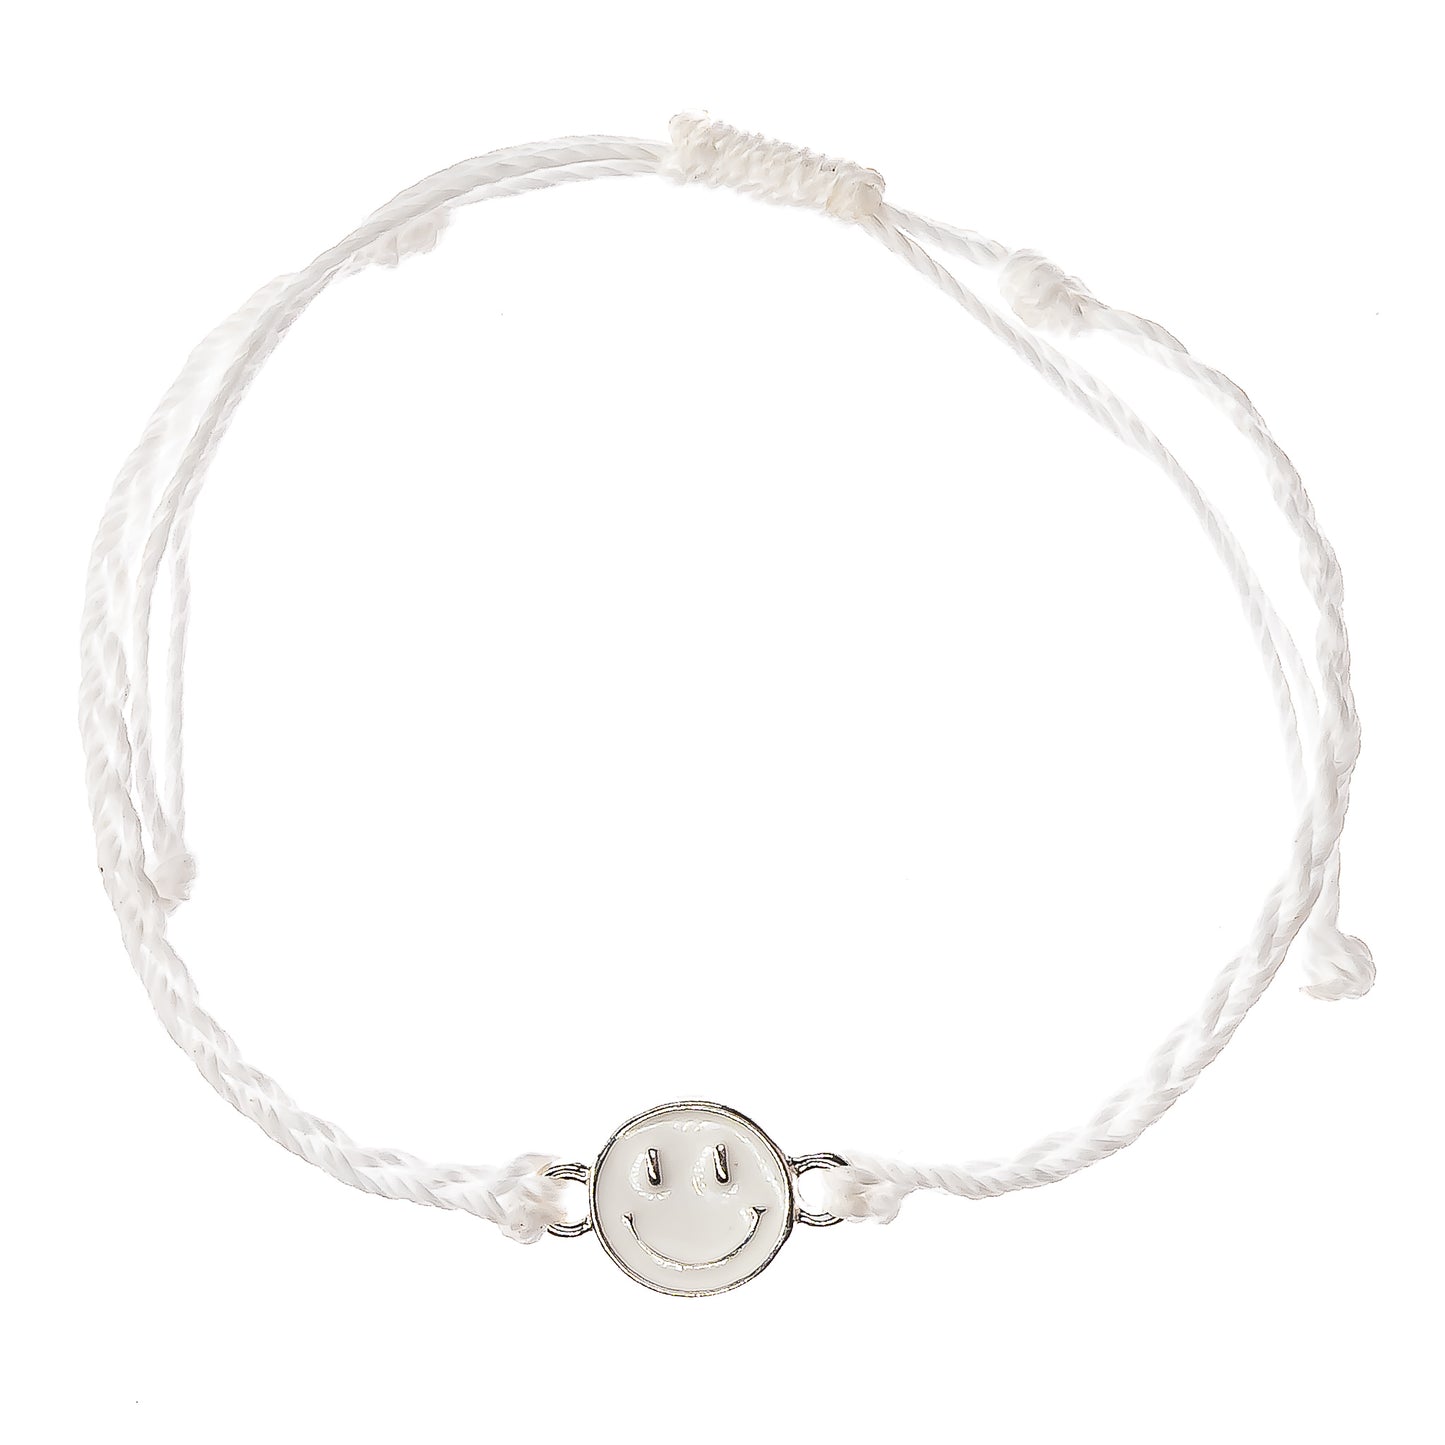 white smiley face charm string bracelet